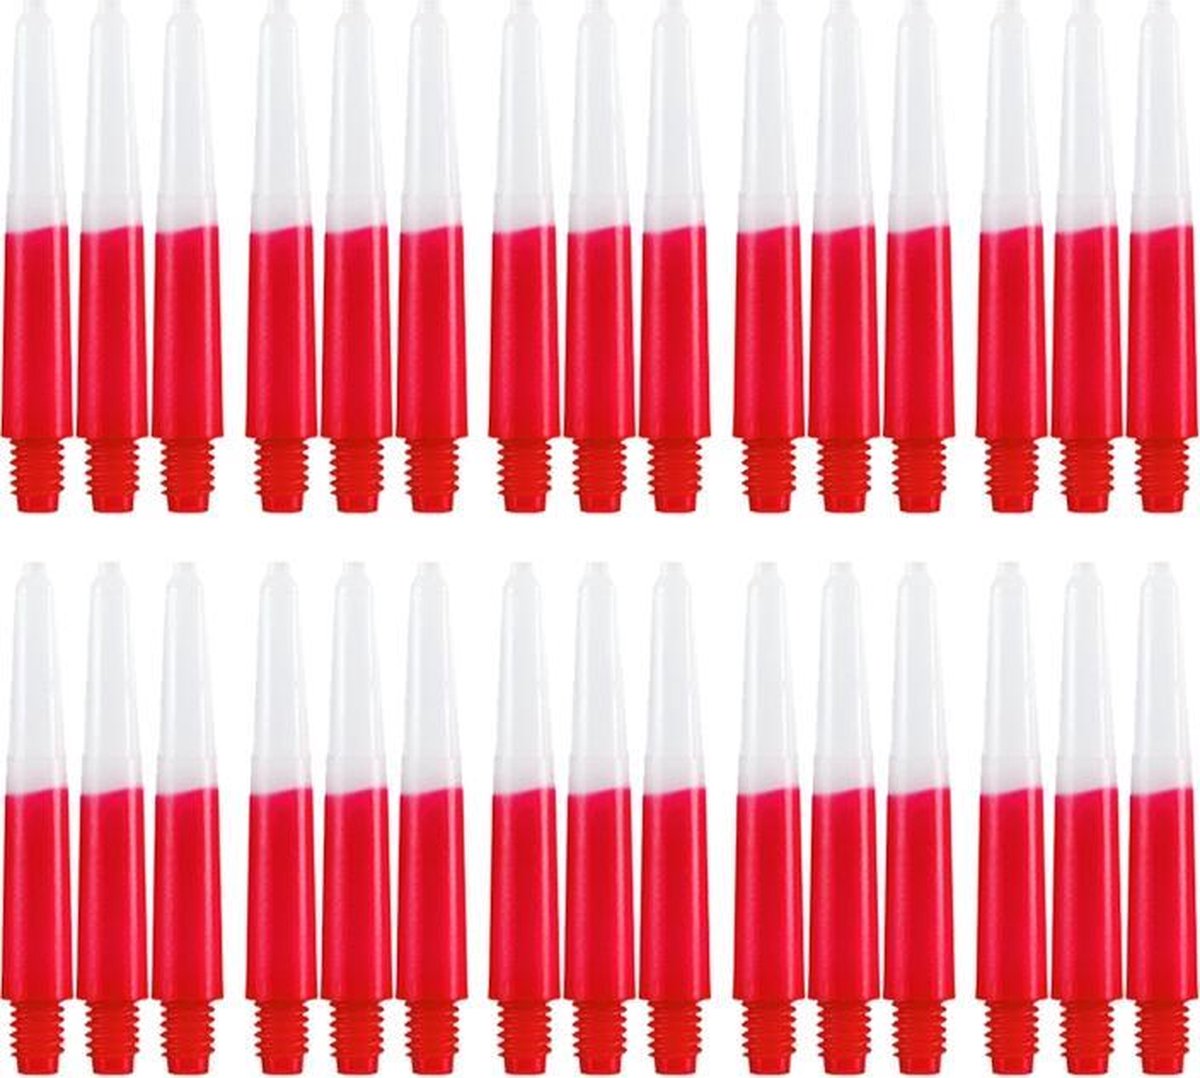 Dragon darts - Two Tone rood - short - dart shafts - multipack 10 sets - darts shafts